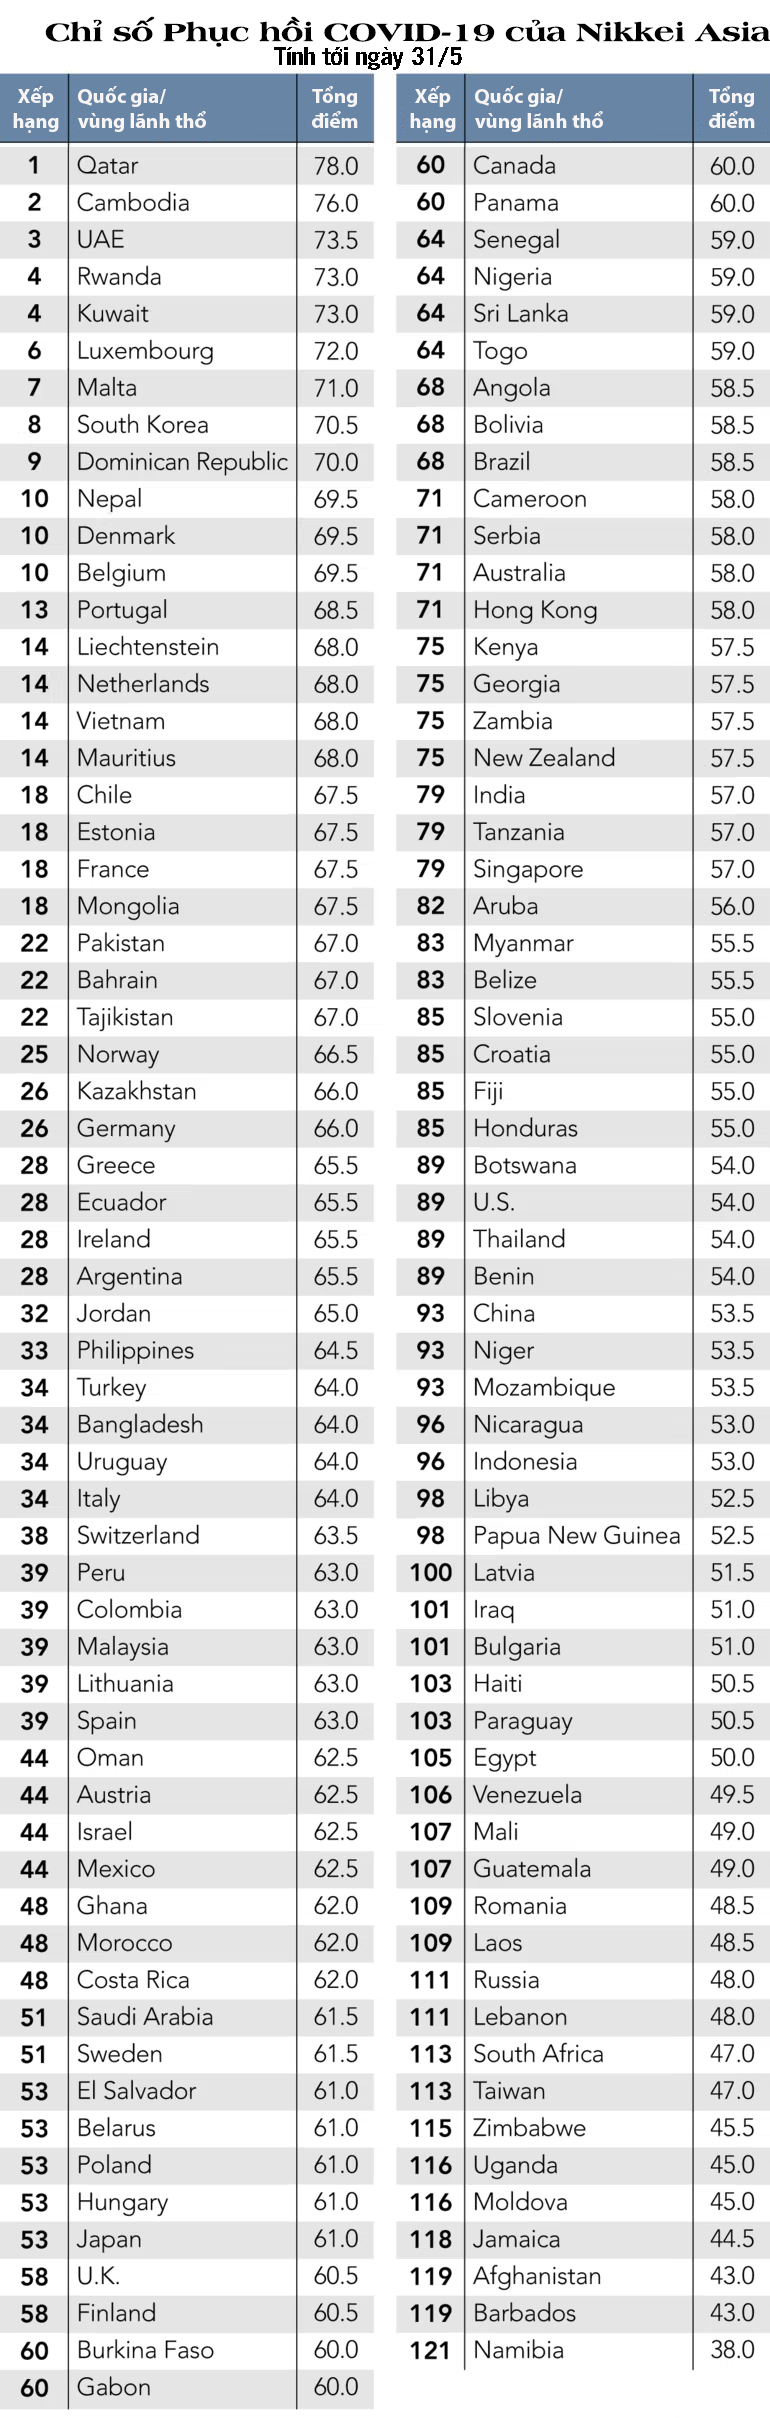 Việt Nam, Philippines thăng hạng trong bảng 'Chỉ số Phục hồi COVID-19' - Ảnh 2.